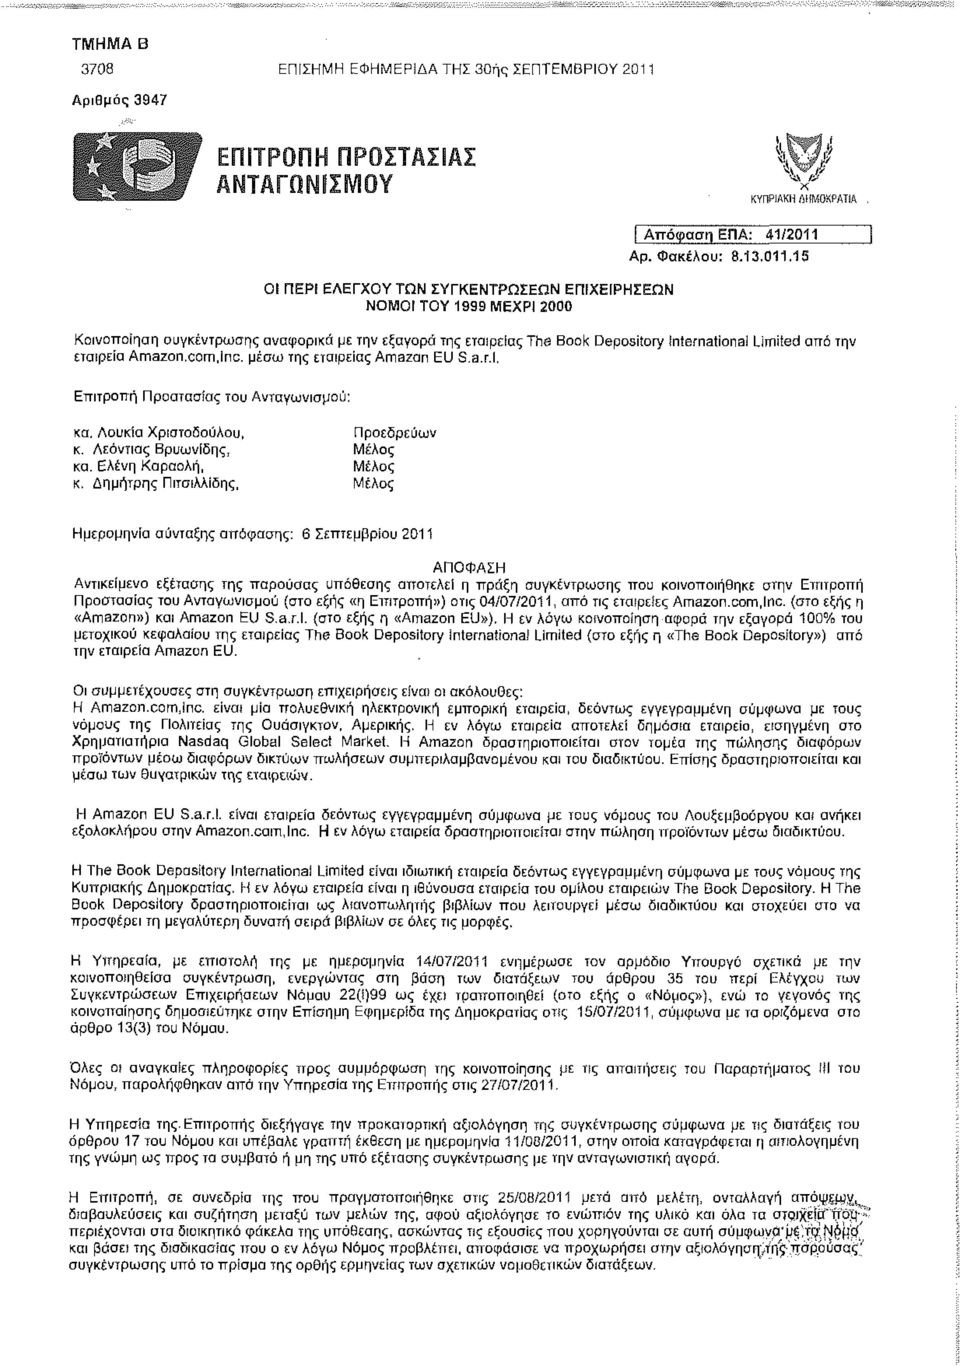 Δημήτρης Πιτσιλλίδης, Μέλος Ημερομηνία σύνταξης απόφασης: 6 Σεπτεμβρίου 2011 ΑΠΟΦΑΣΗ Αντικείμενο εξέτασης της παρούσας υπόθεσης αποτελεί η πράξη συγκέντρωσης που κοινοποιήθηκε στην Επιτροπή